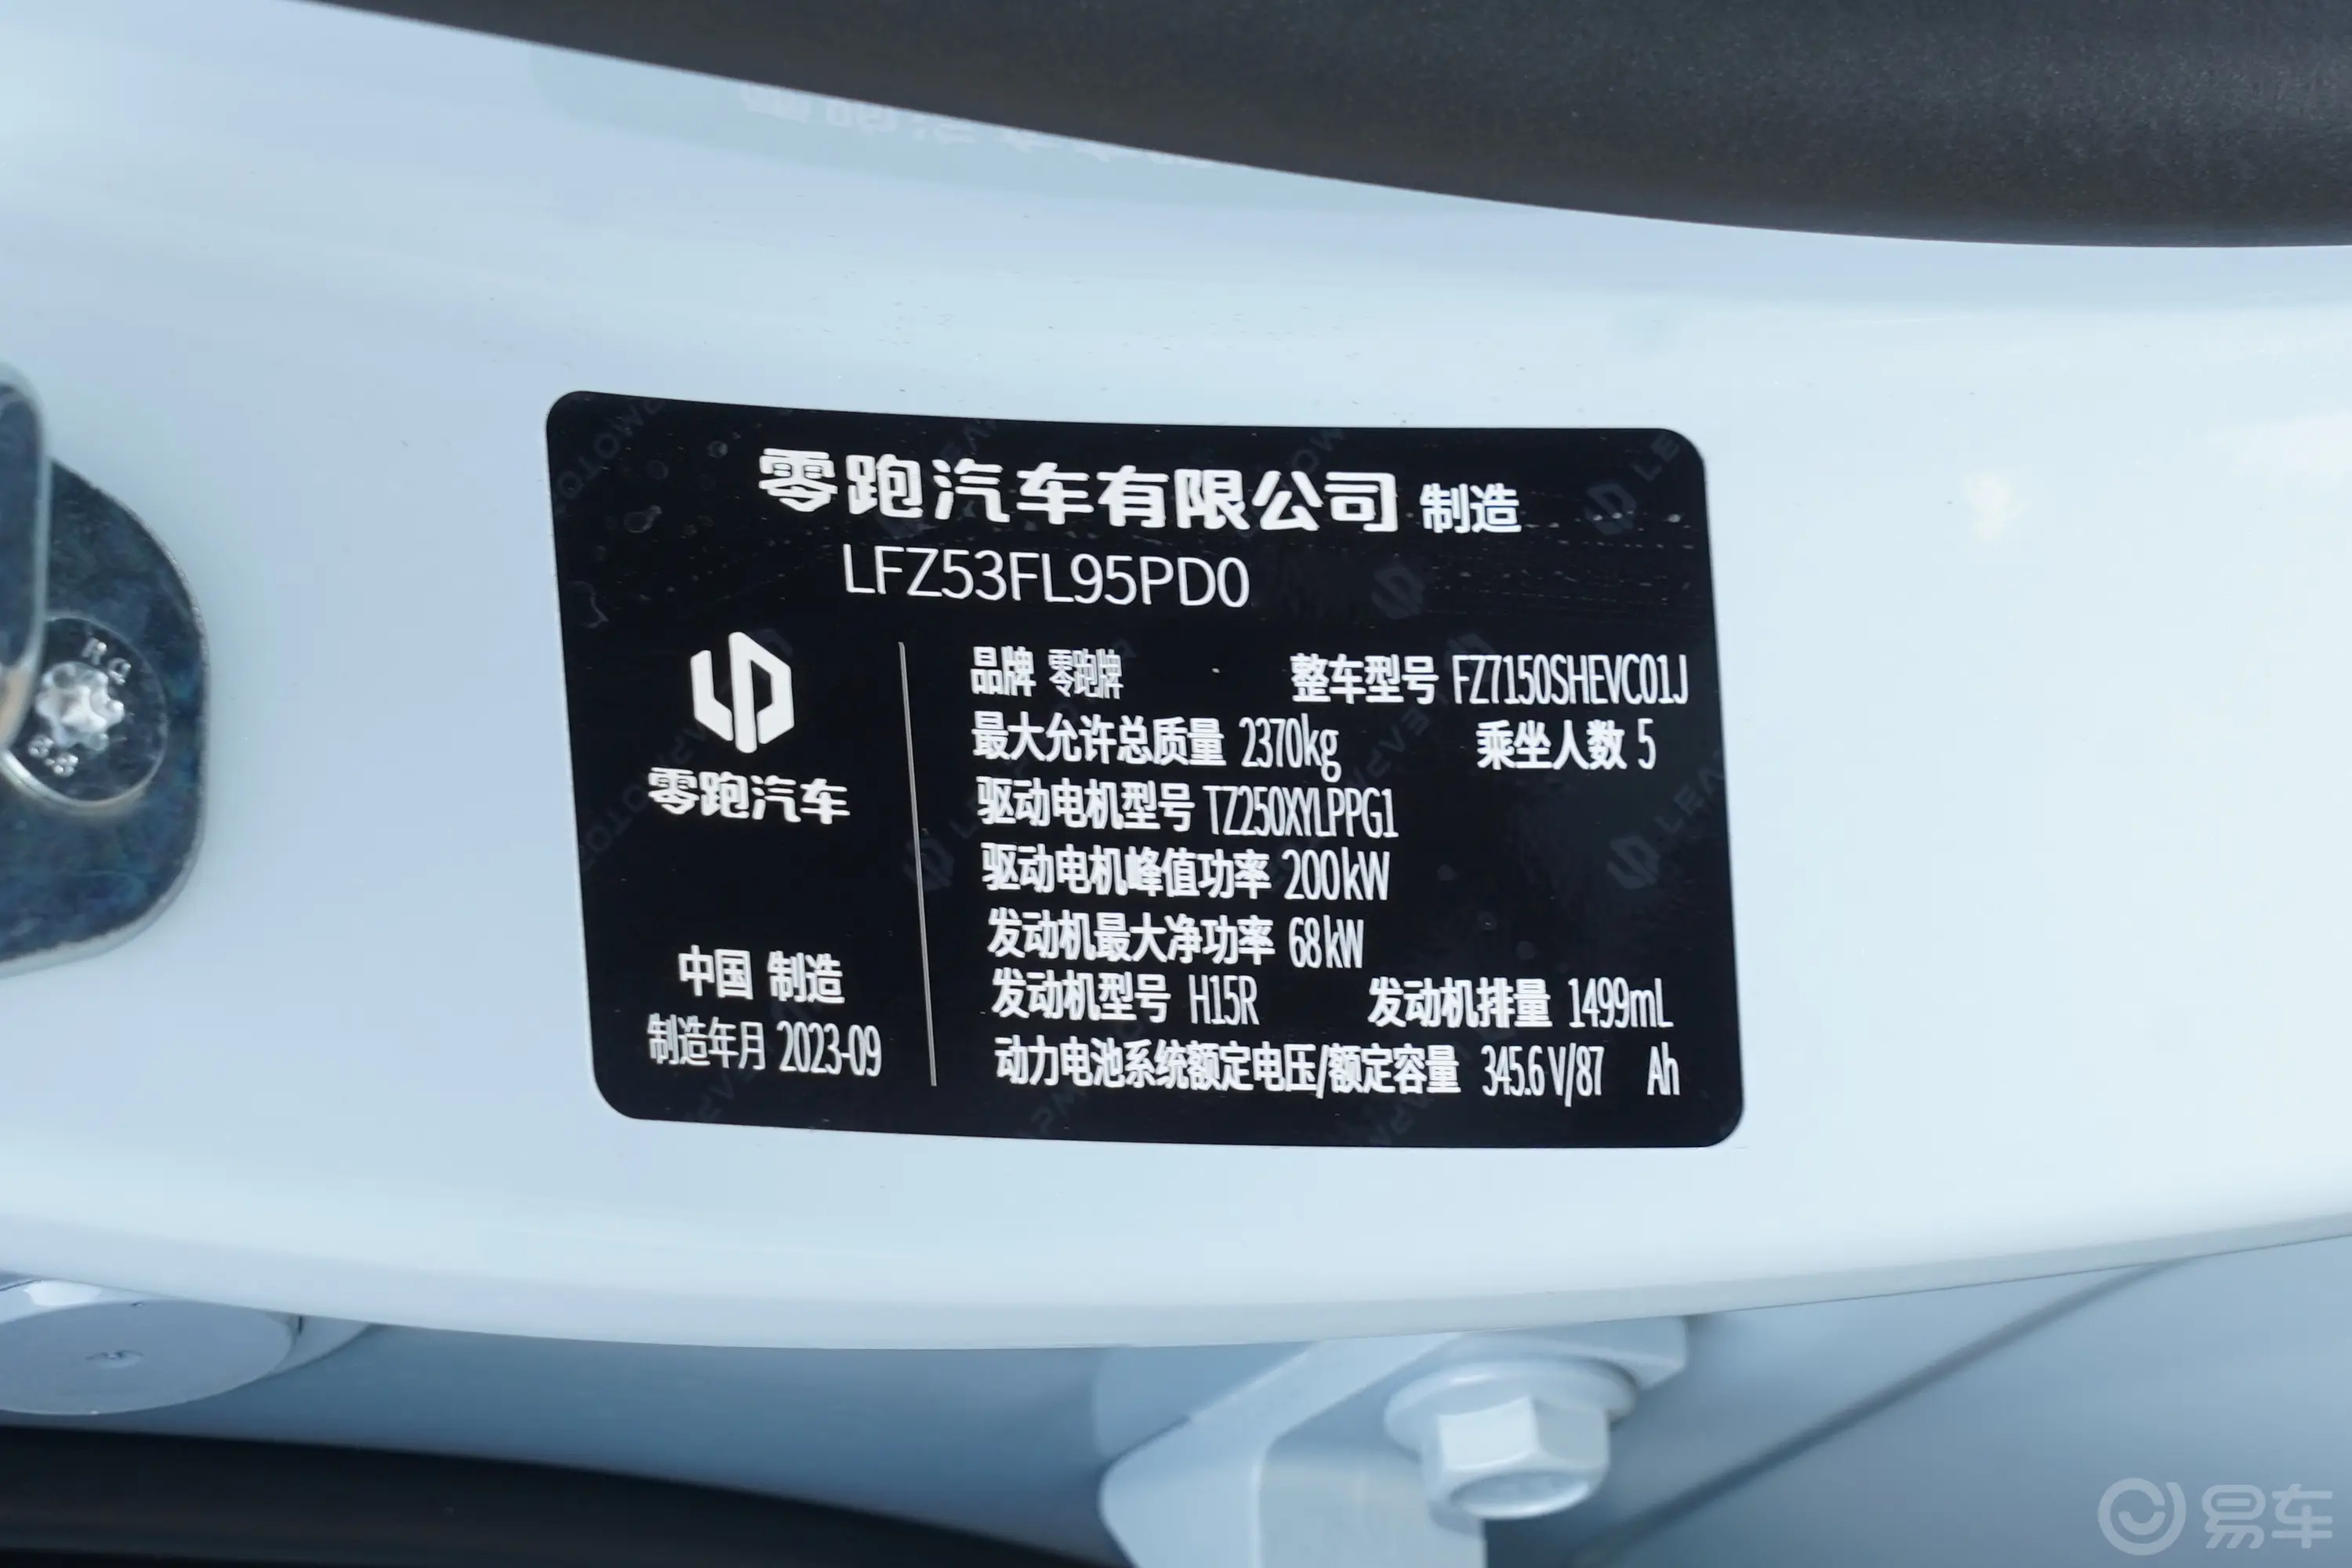 零跑C01增程版 1.5L 216km 舒享版车辆信息铭牌